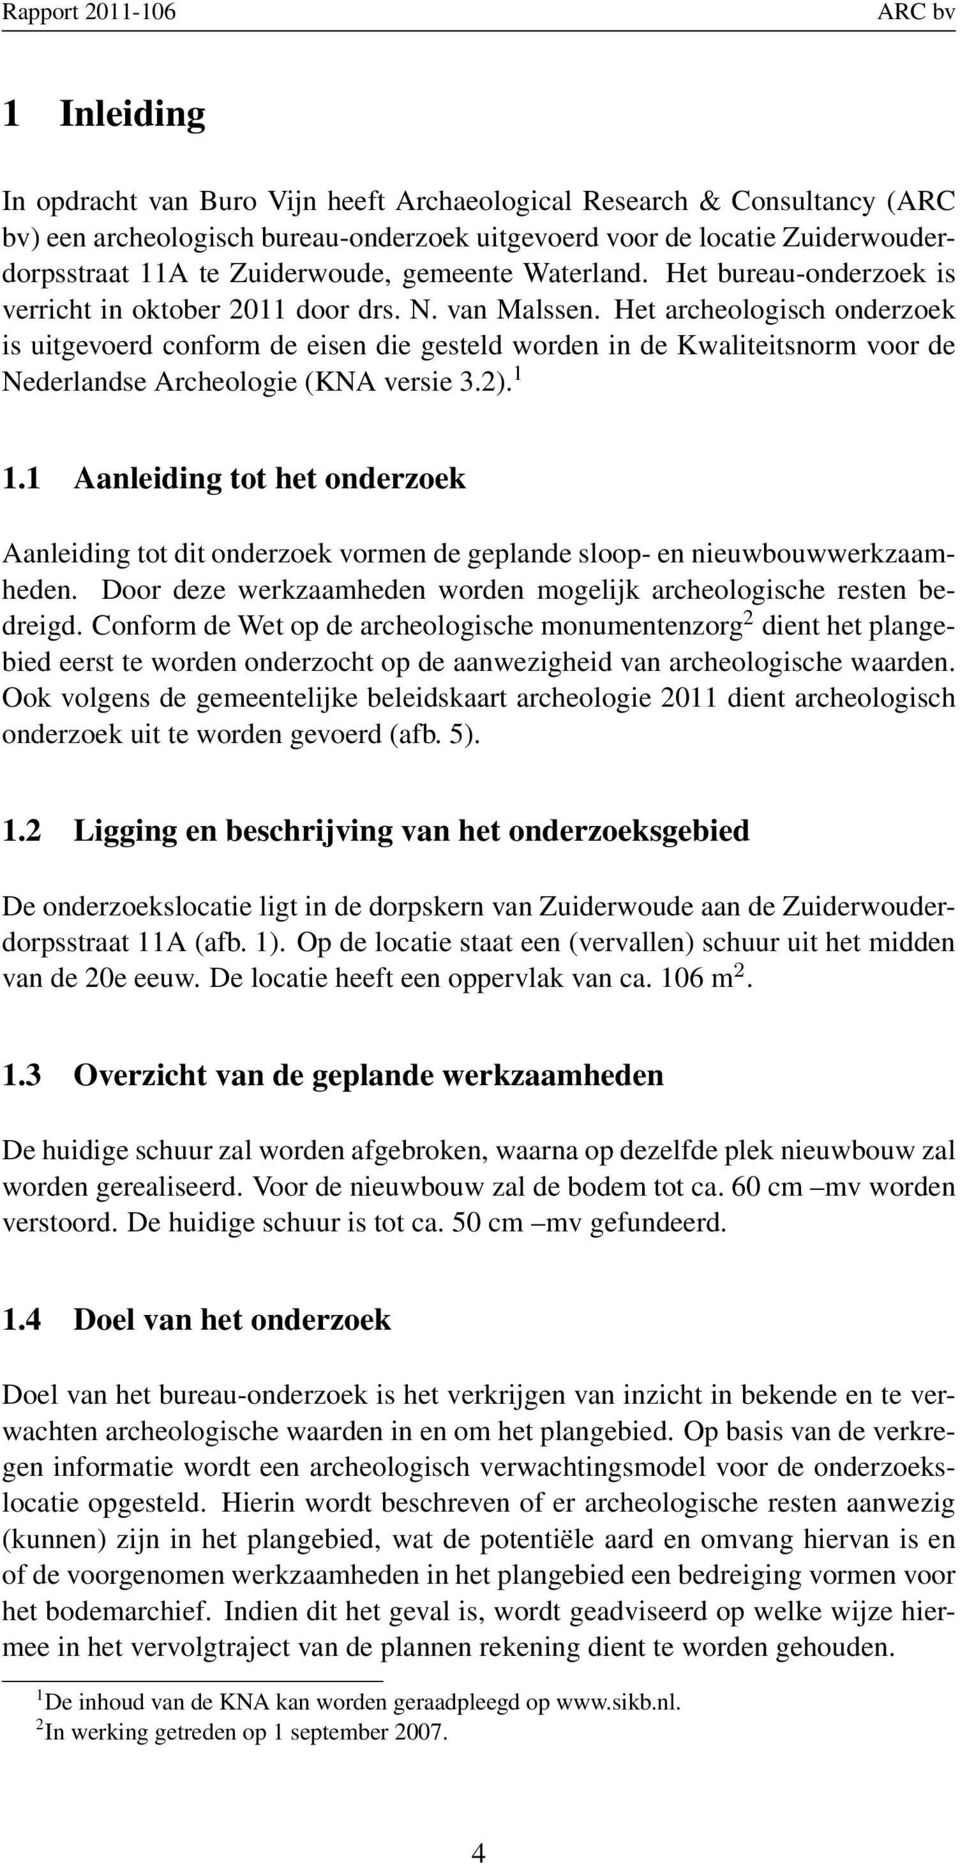 Het archeologisch onderzoek is uitgevoerd conform de eisen die gesteld worden in de Kwaliteitsnorm voor de Nederlandse Archeologie (KNA versie 3.2). 1 1.